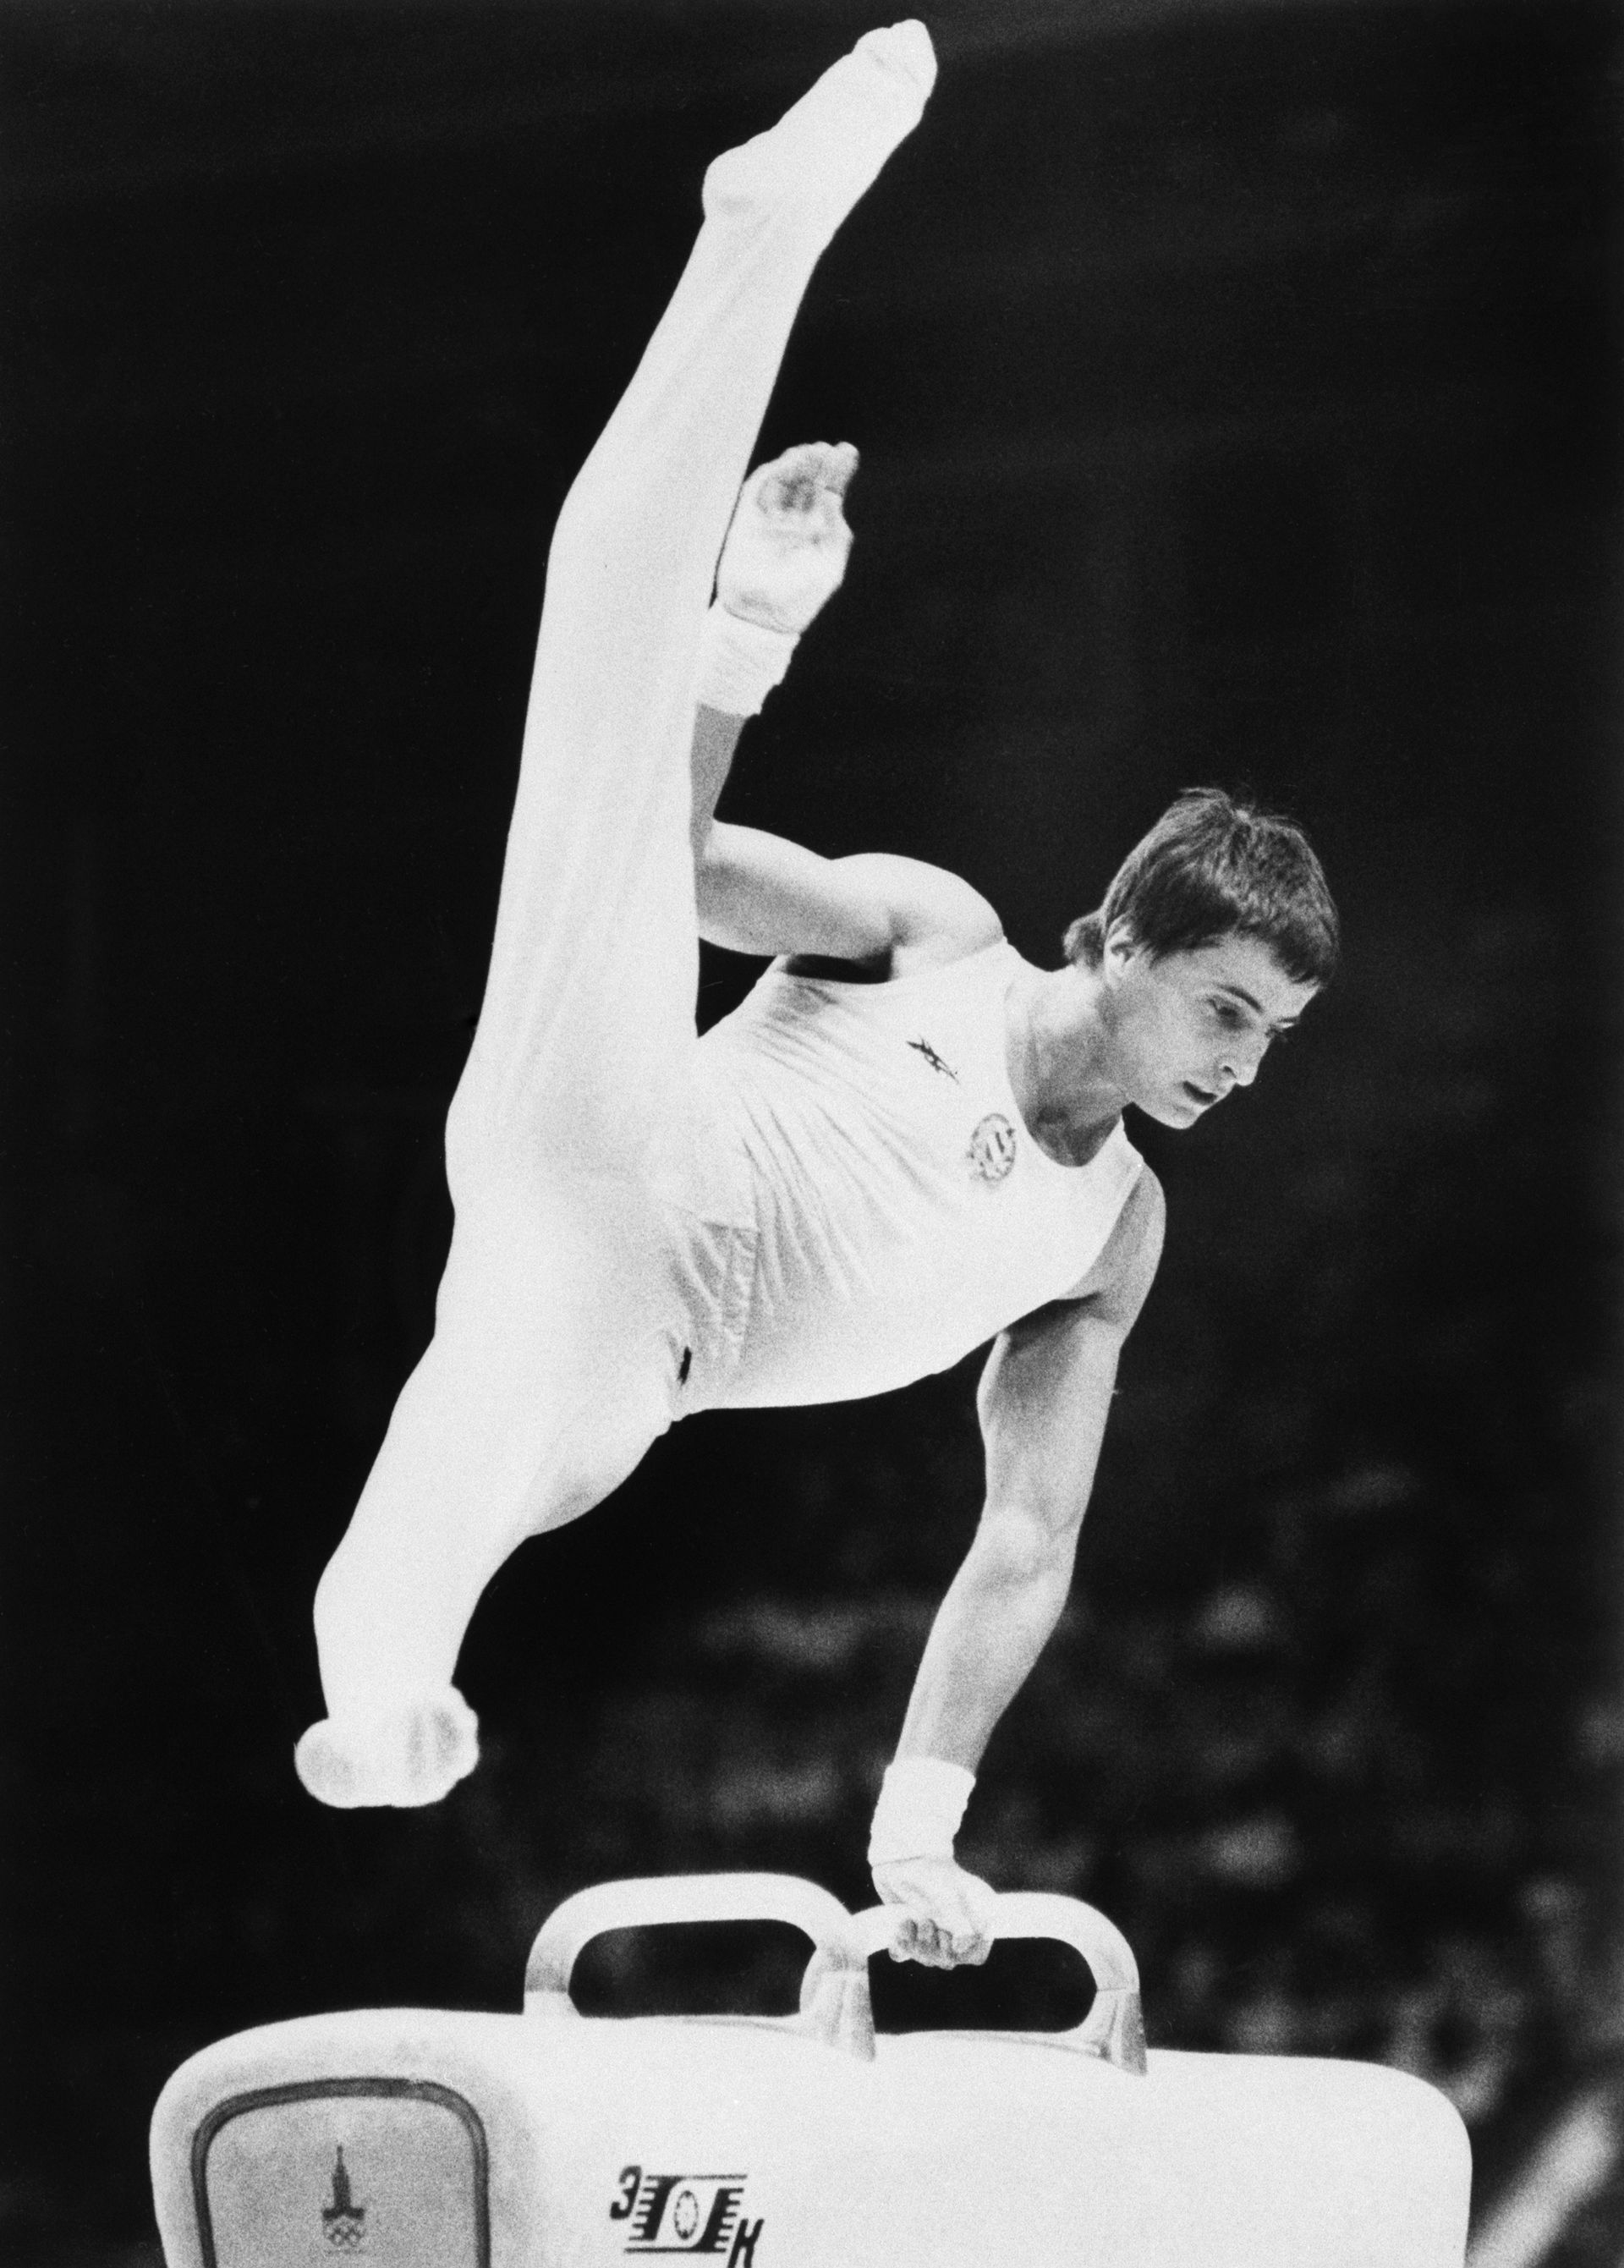 Magyar Zoltán kétszer nyert olimpiát, 1976-ban és 1980-ban is lovon szerzett aranyat. /Fotó: Getty Images